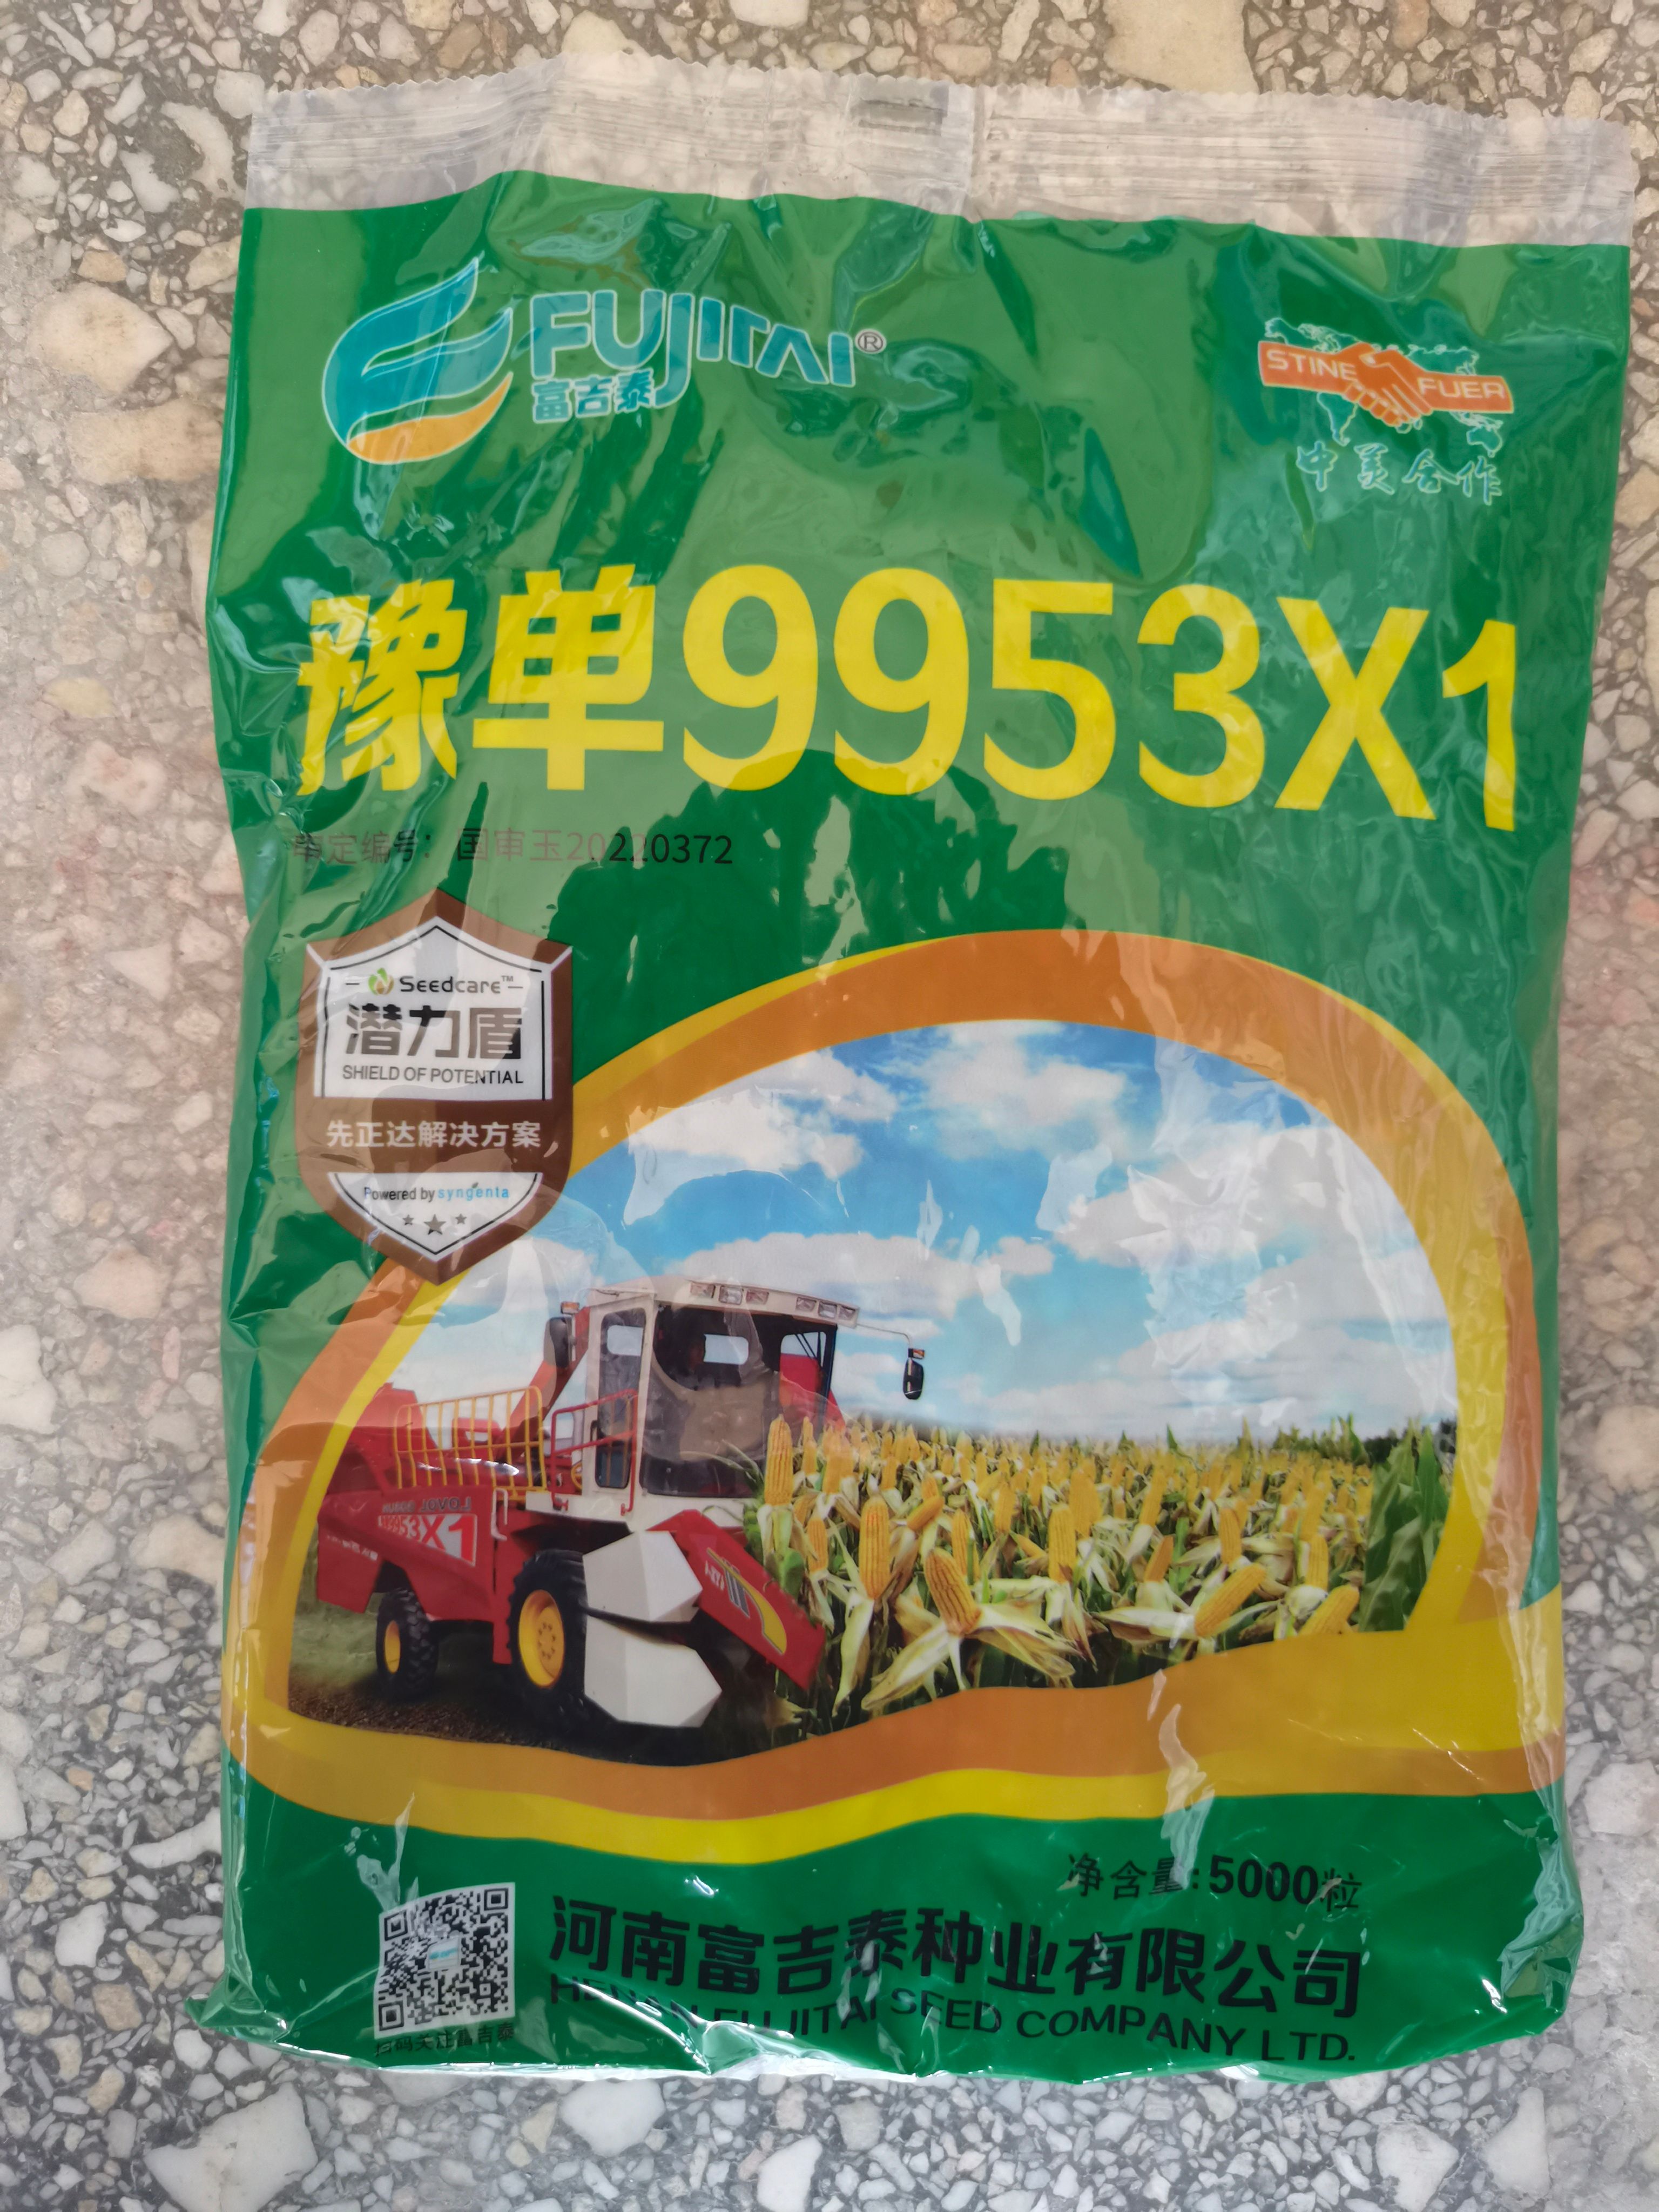 洛阳9953X1高抗锈病抗高温新型大豆玉米间作技术的再创新高